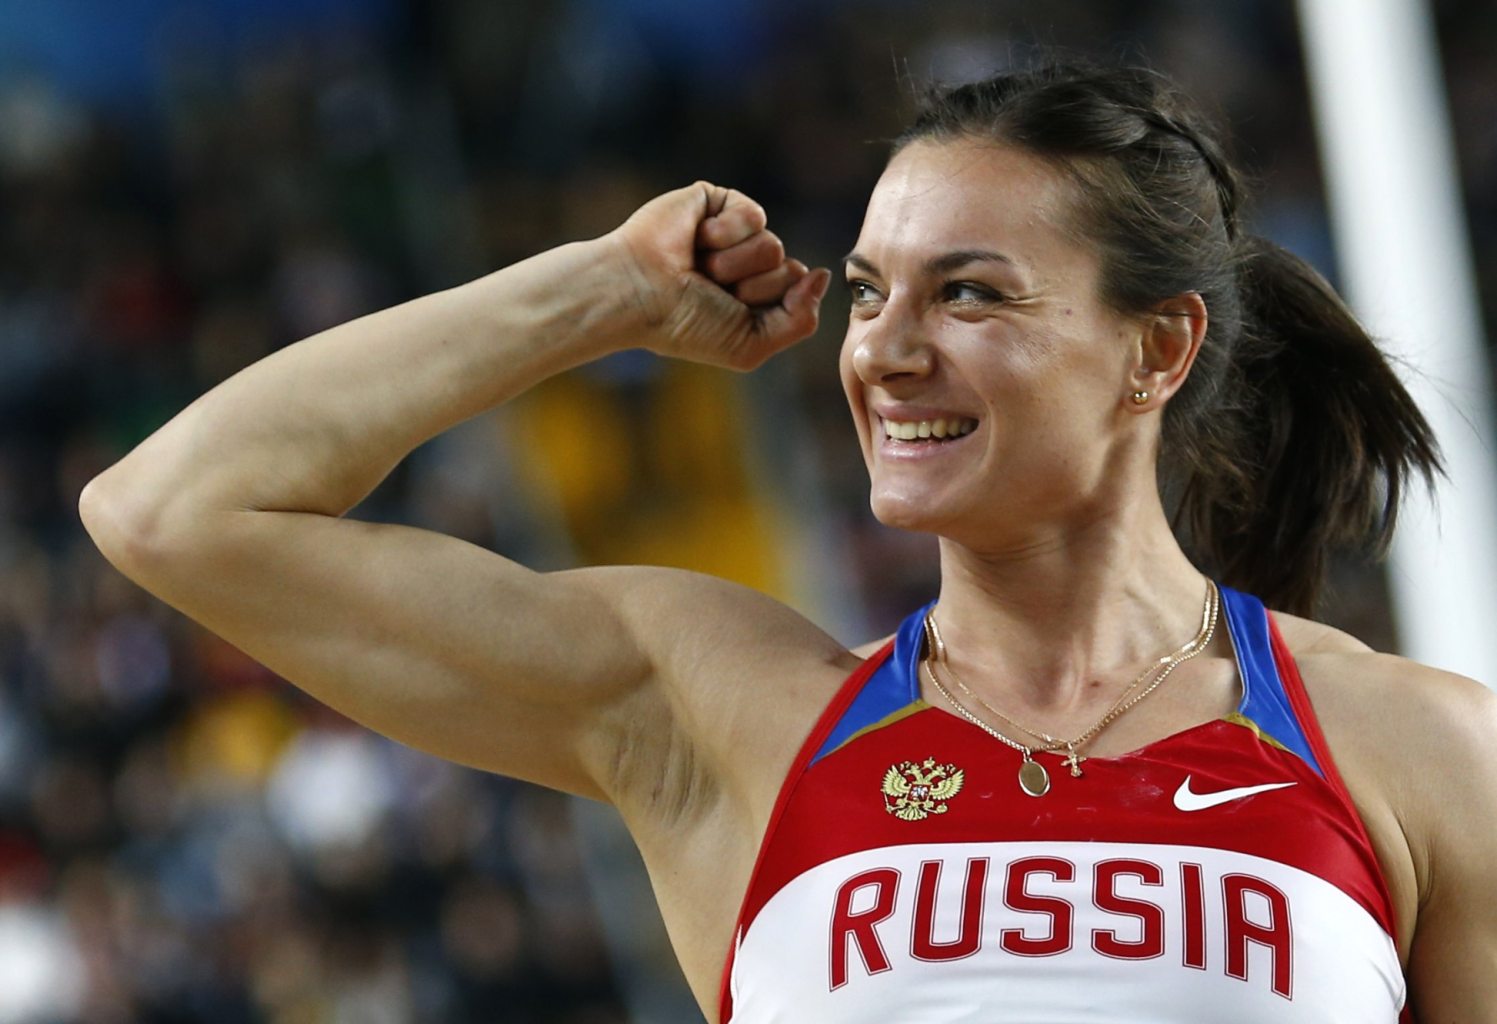  РИО 2016: МОК и IAAF боятся великой Исинбаевой?  - фото 1